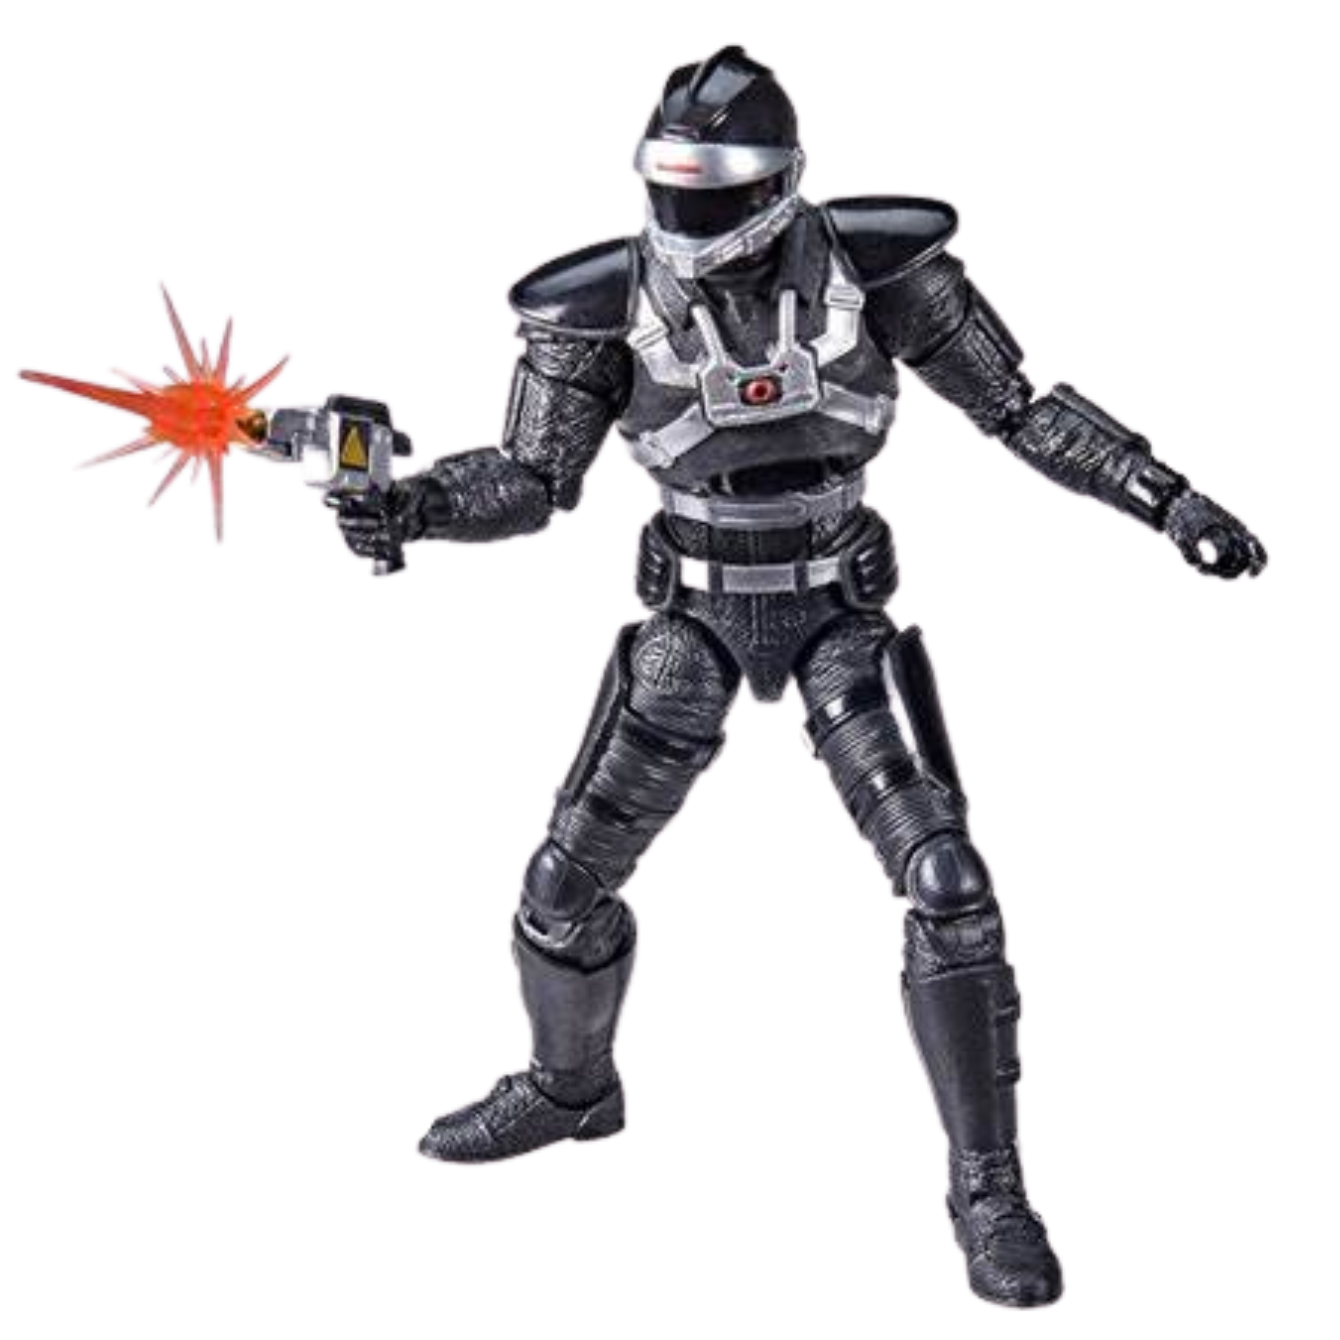 Phantom Ranger Power Ranger Action Figure